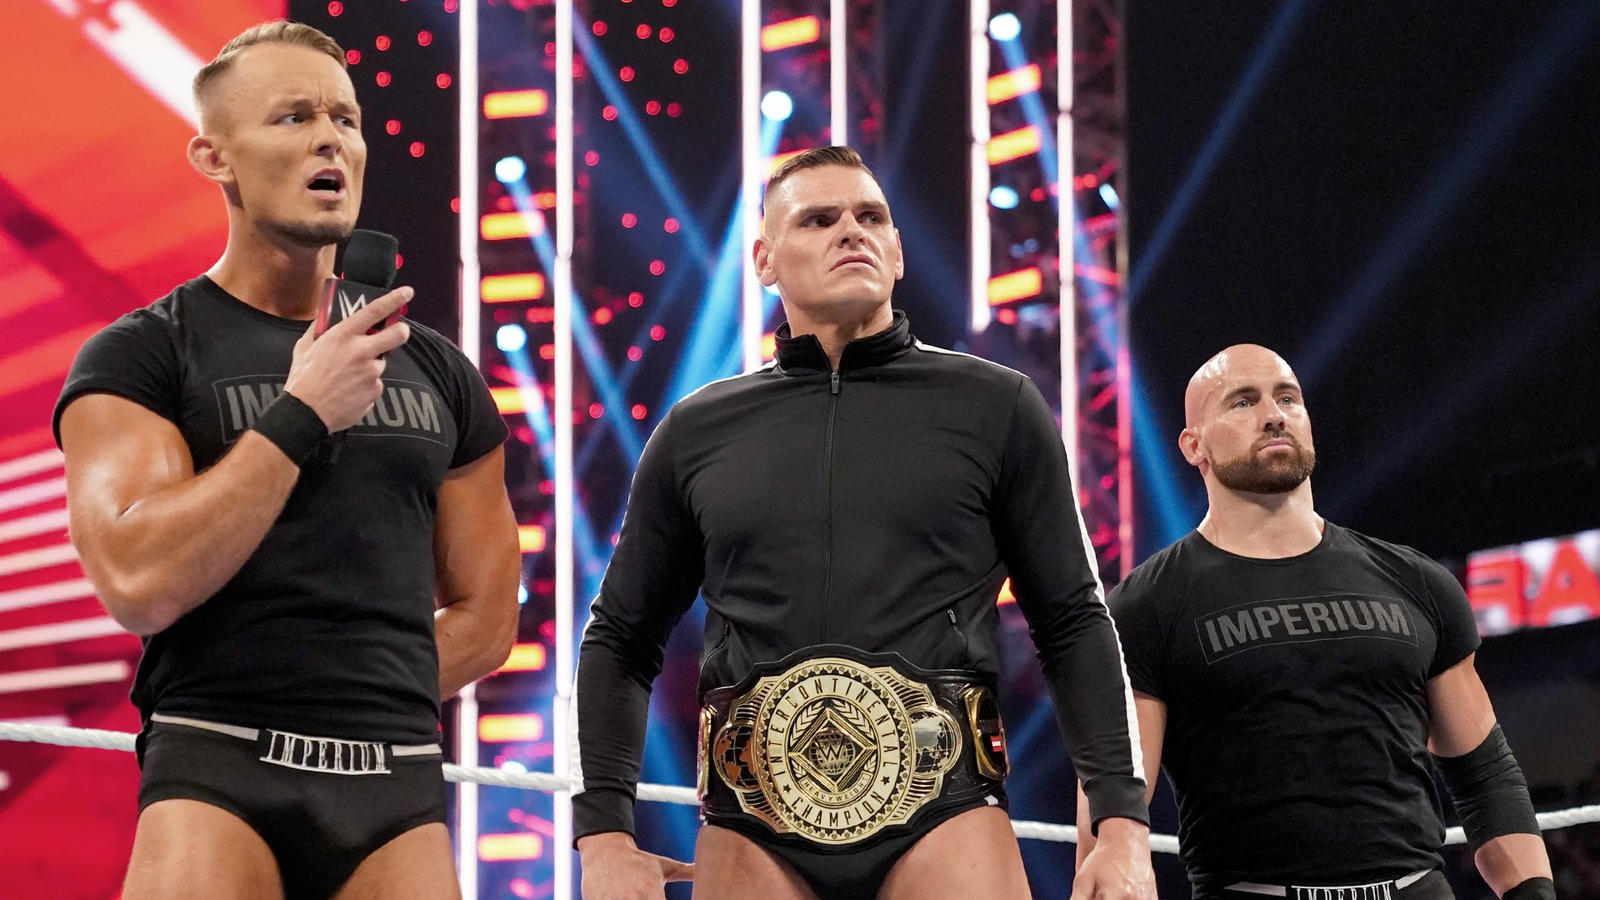 Гюнтер сделал интересное предложение на Raw; Квалификационные матчи назначены на следующее Raw